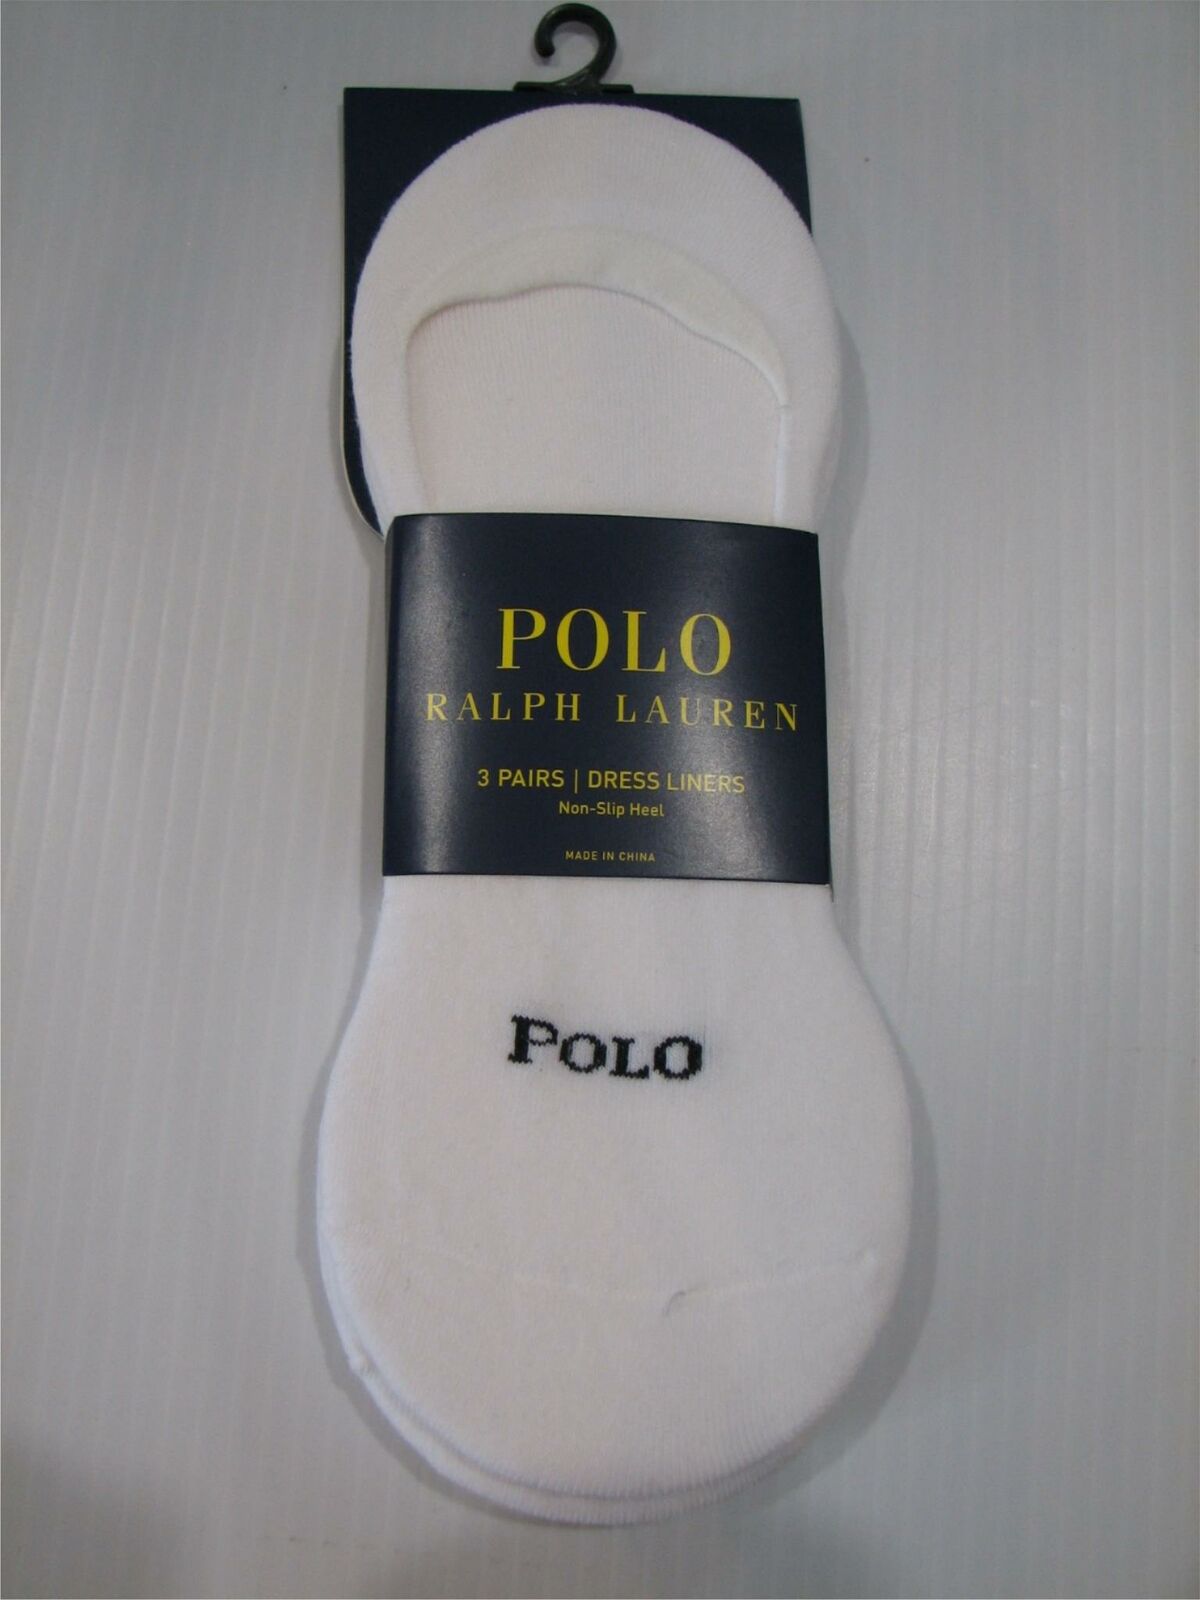 Polo Ralph Lauren 3 Pair No Show Dress Liners Socks Men's 6-12 Shoe Size